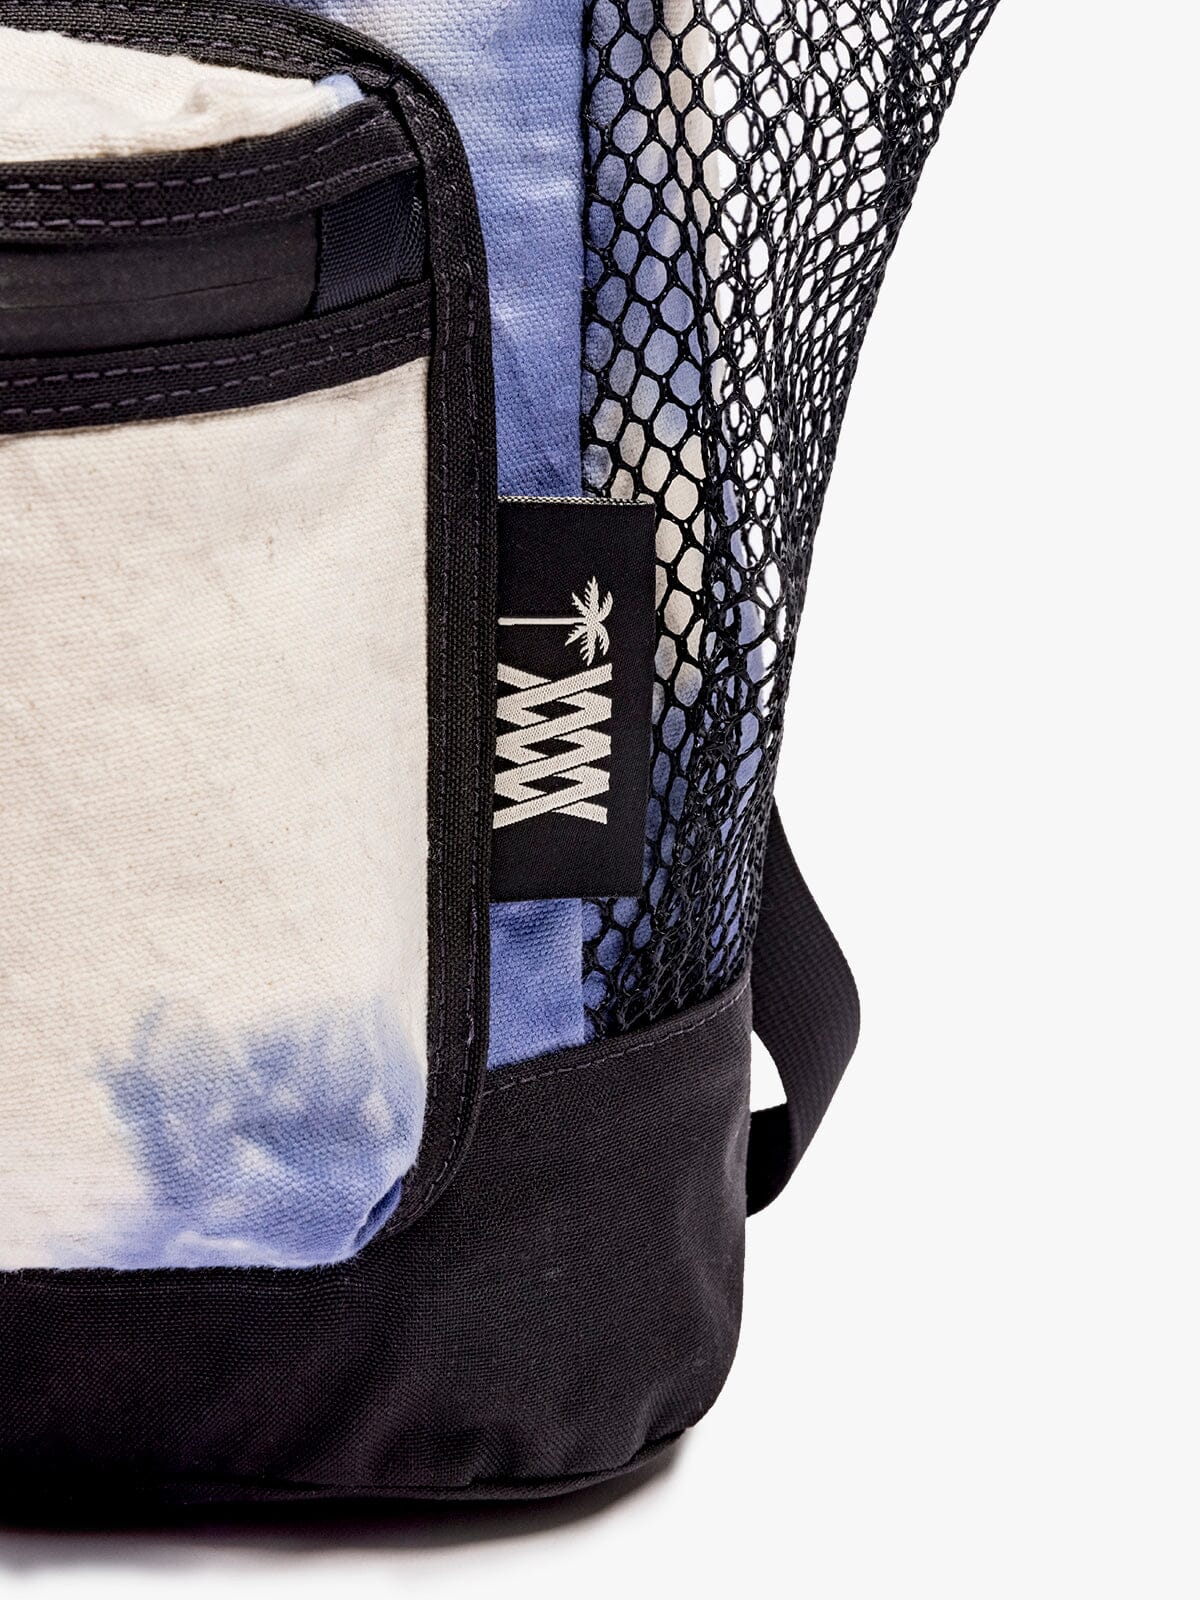 MW x ASP Stratus Ruck von Mission Workshop - Wetterfeste Taschen & Technische Bekleidung - San Francisco & Los Angeles - Für die Ewigkeit gebaut - Garantiert